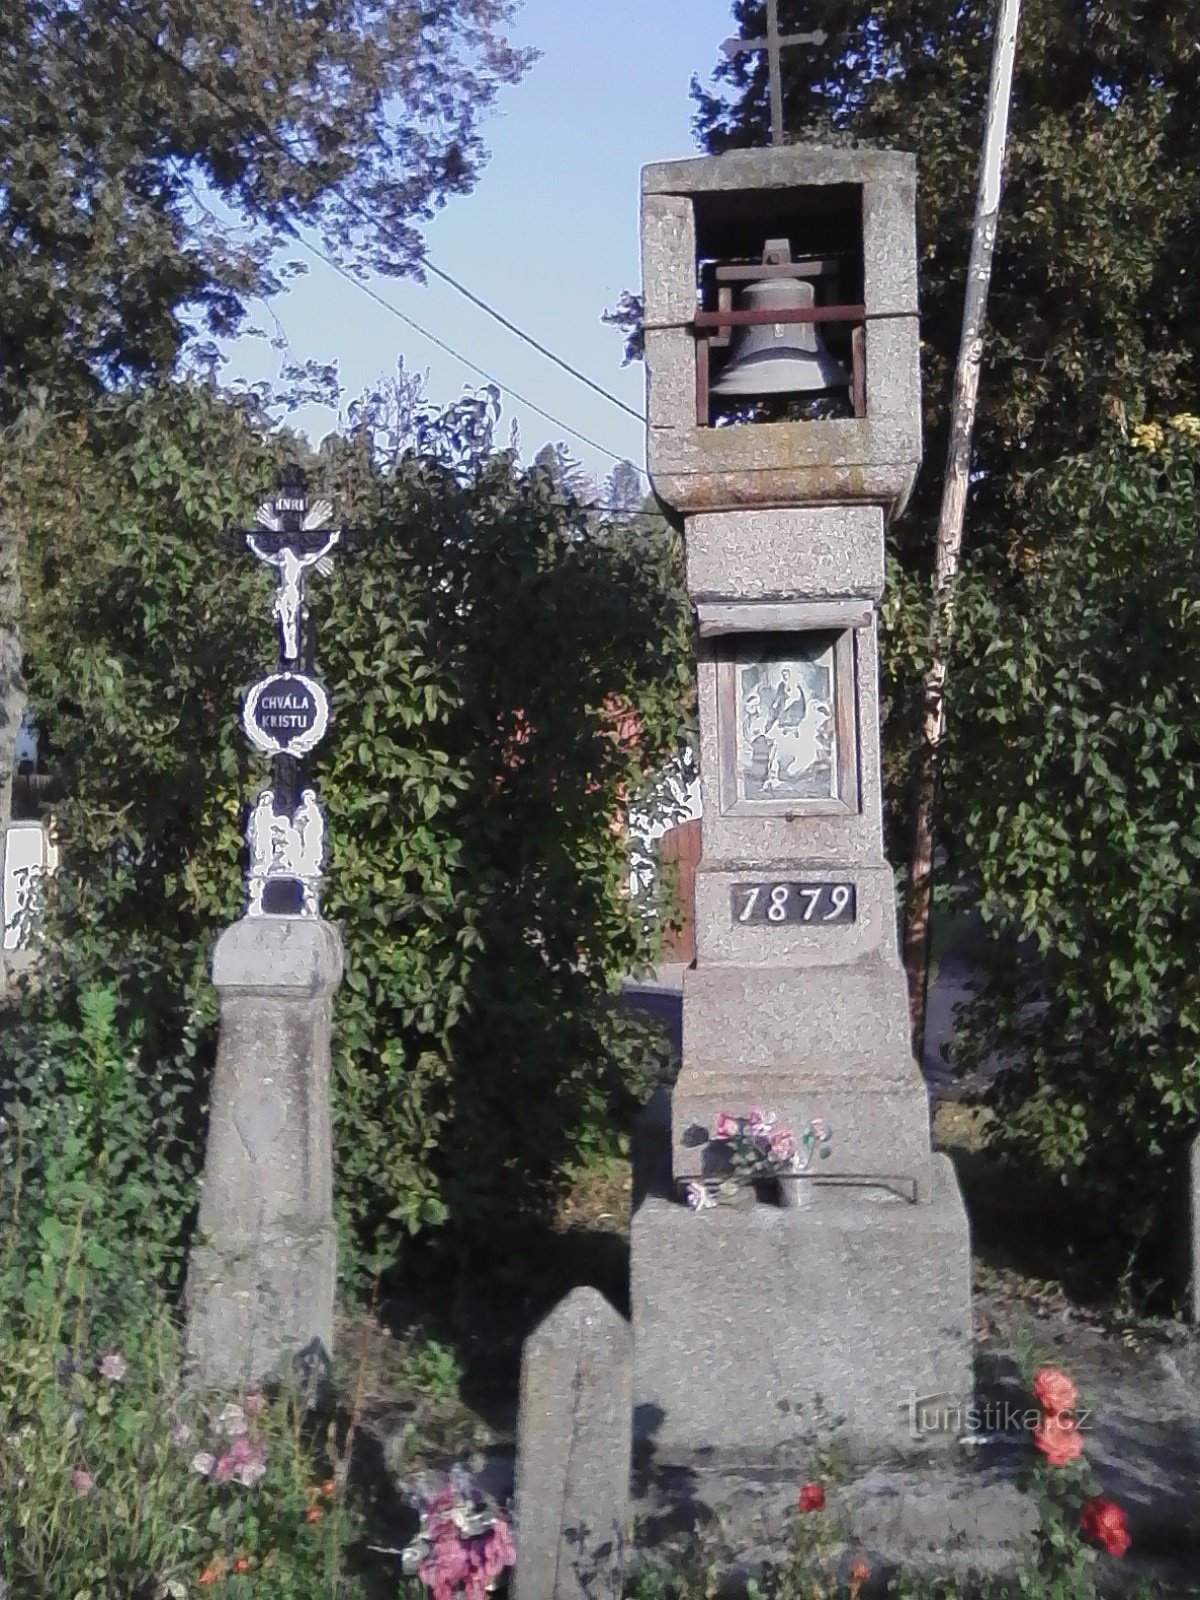 2. Πέτρινο σκαλιστό καμπαναριό με σταυρό του 1879 στο Vilasová Lhota